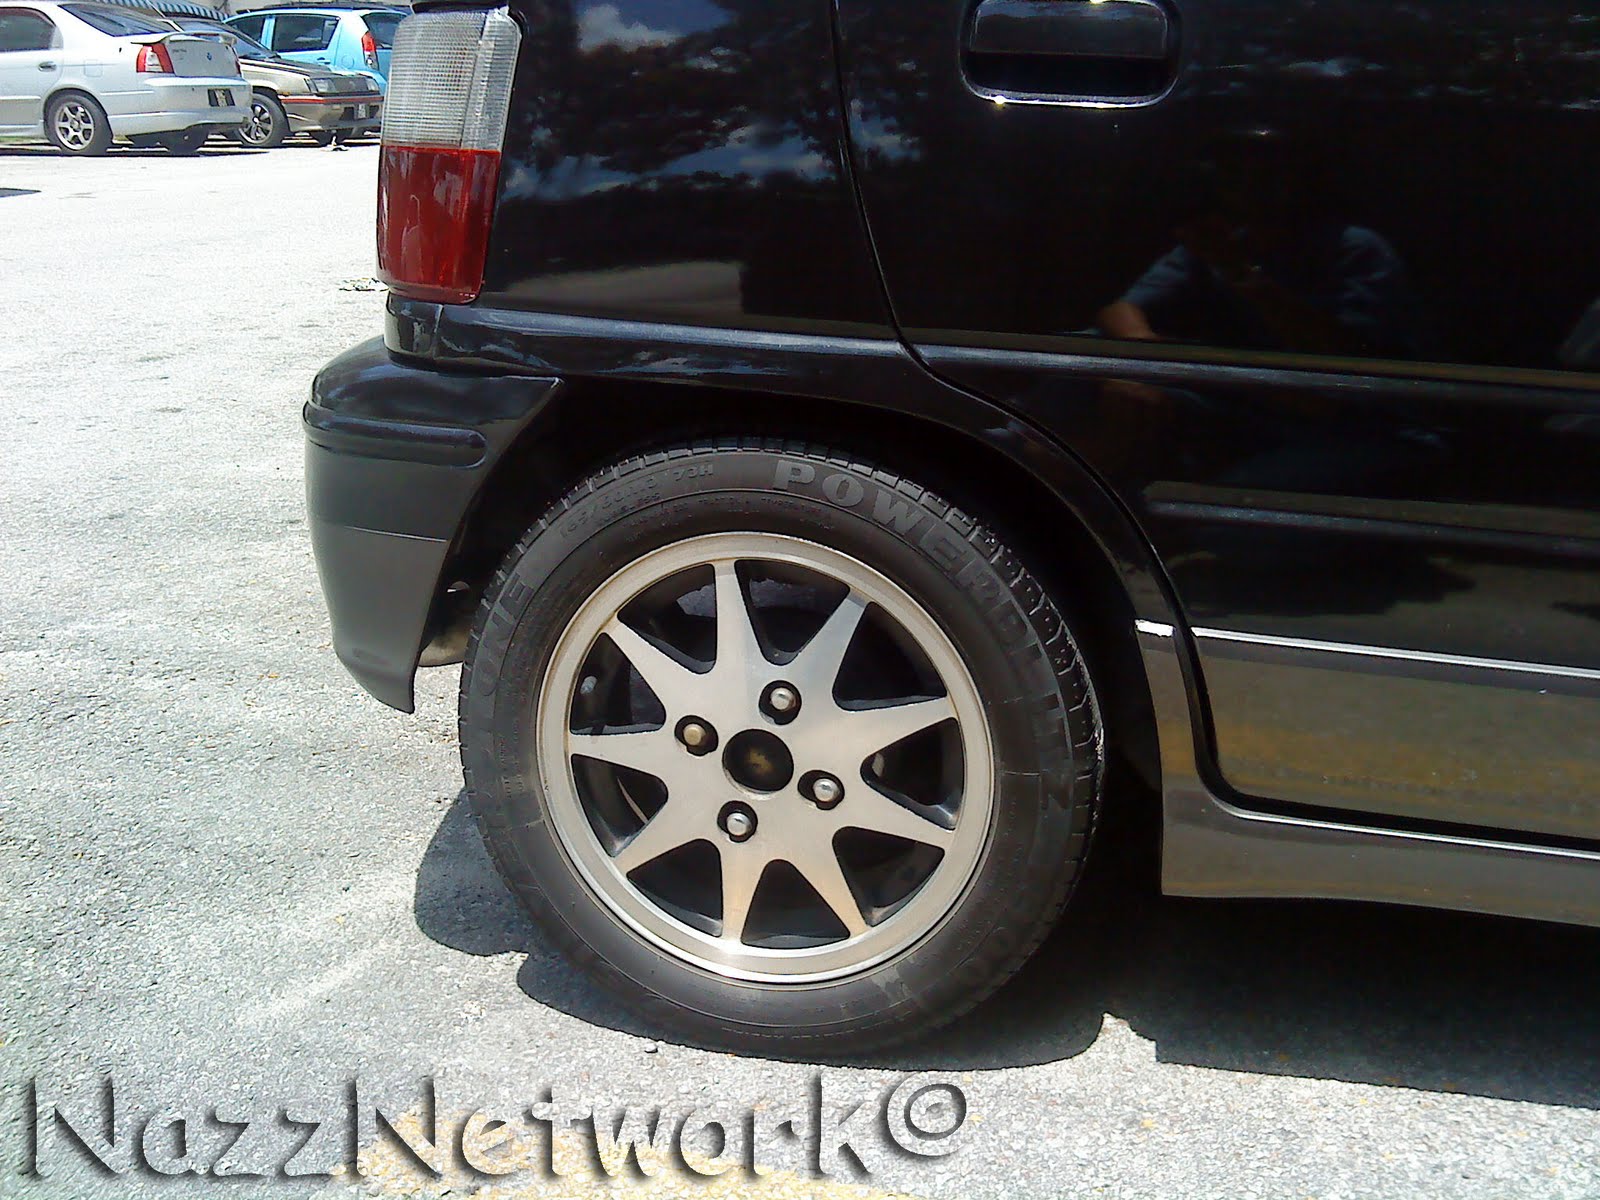 Jom Beli @ NazzNetw Shop: Perodua Kancil EZ660 For Sale 